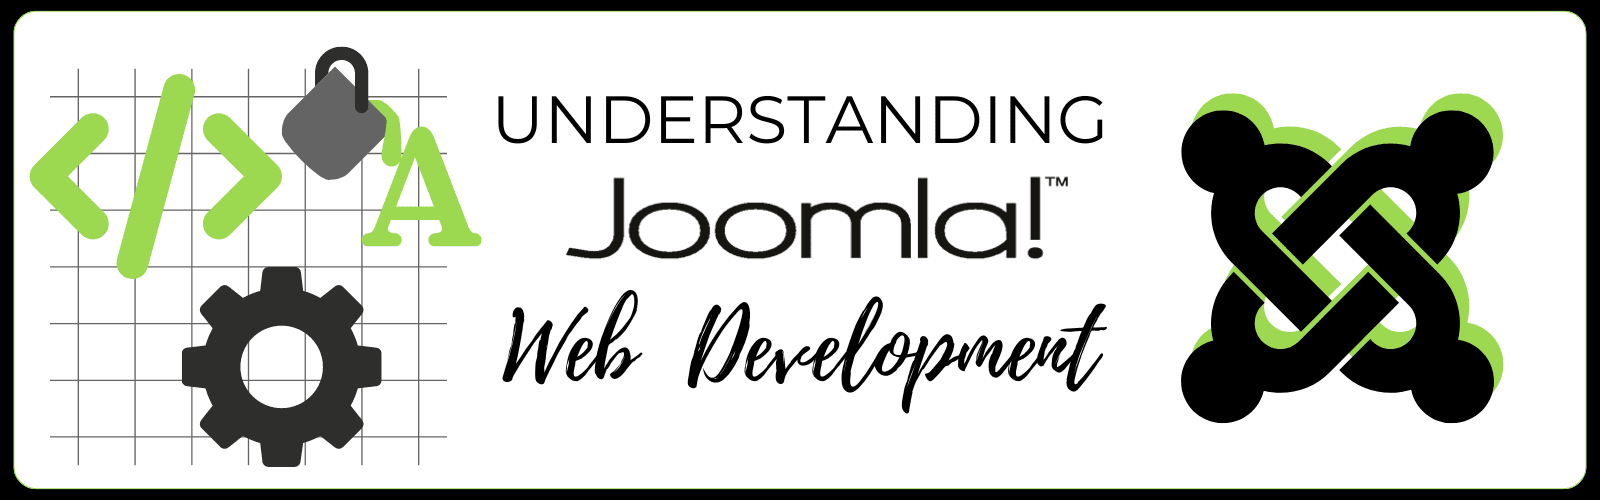 understanding joomla web development